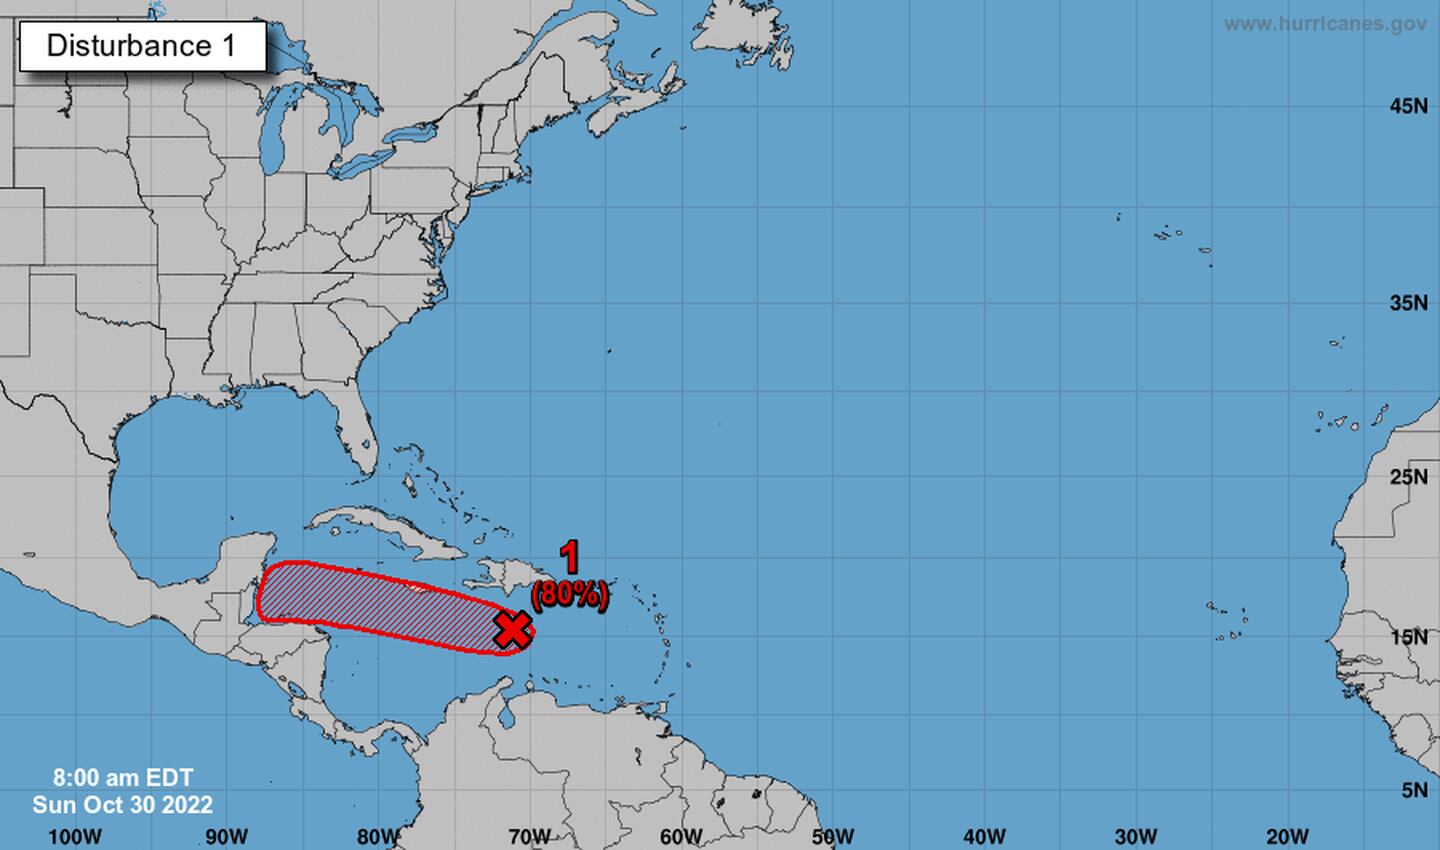 El NHC está monitoreando un área de baja presión en el Mar Caribe central, que ahora tiene una alta probabilidad de convertirse en un ciclón tropical.